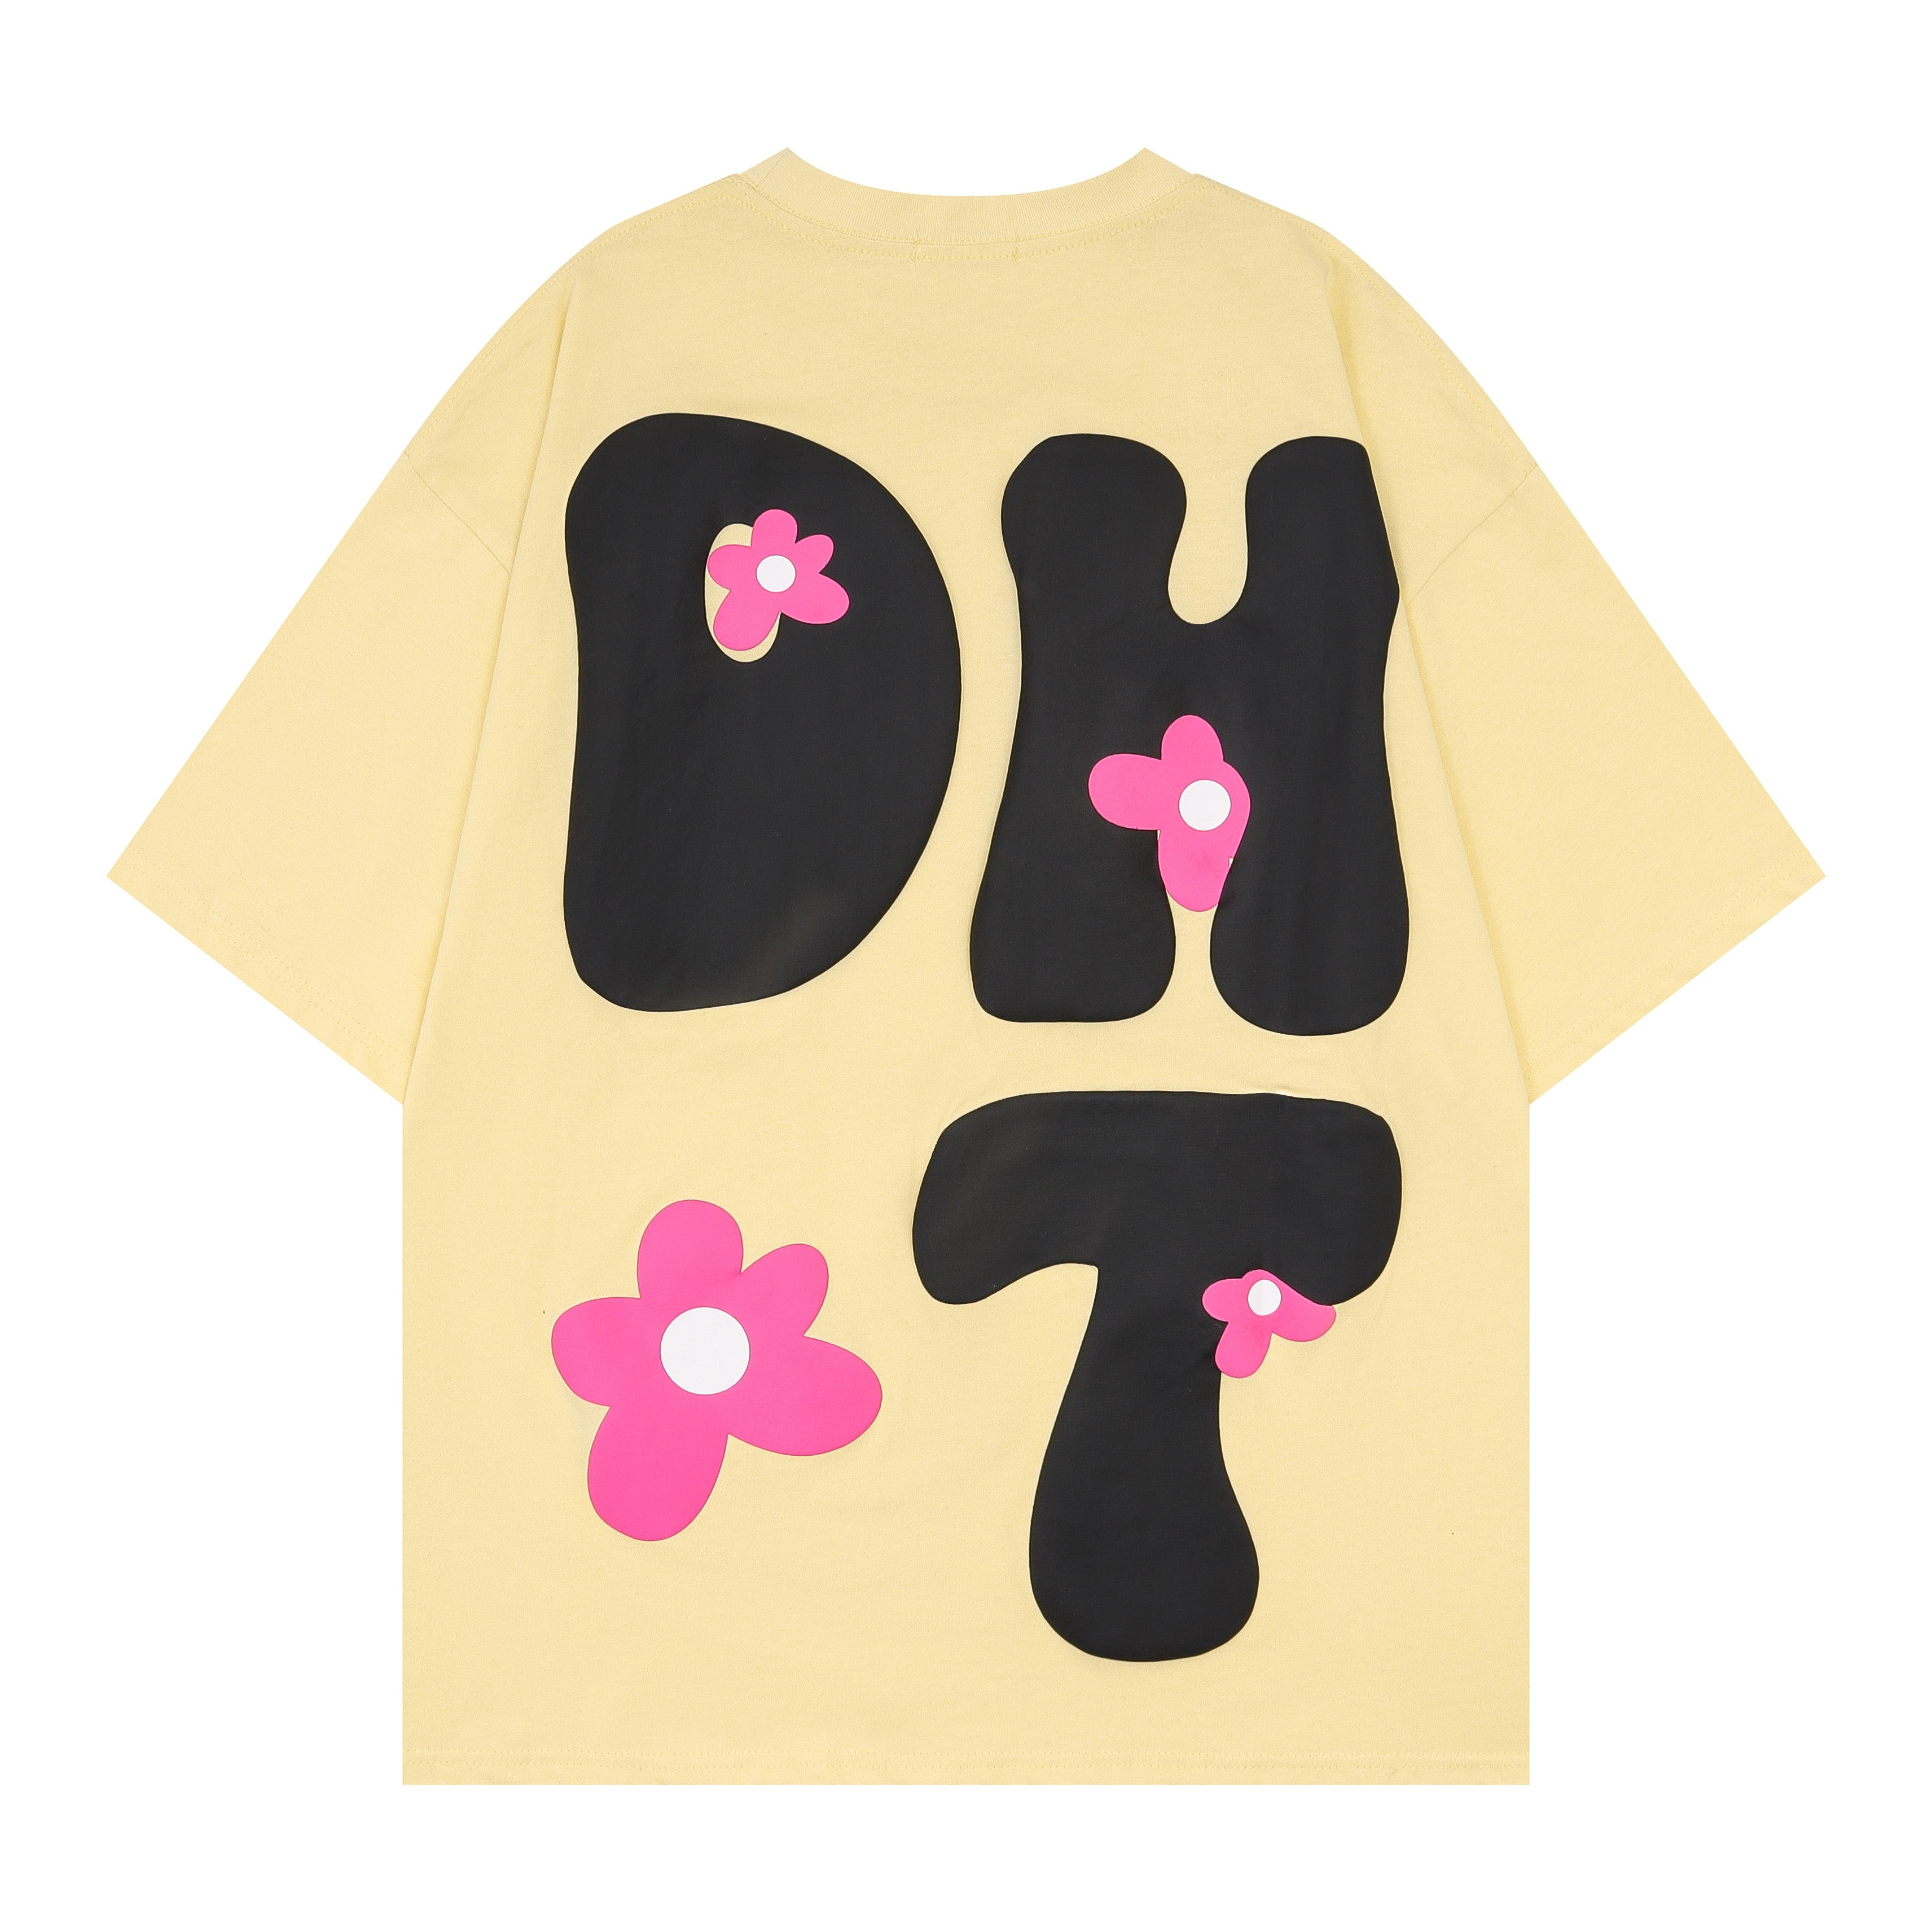 'Cute DHT' T Shirt - Santo 